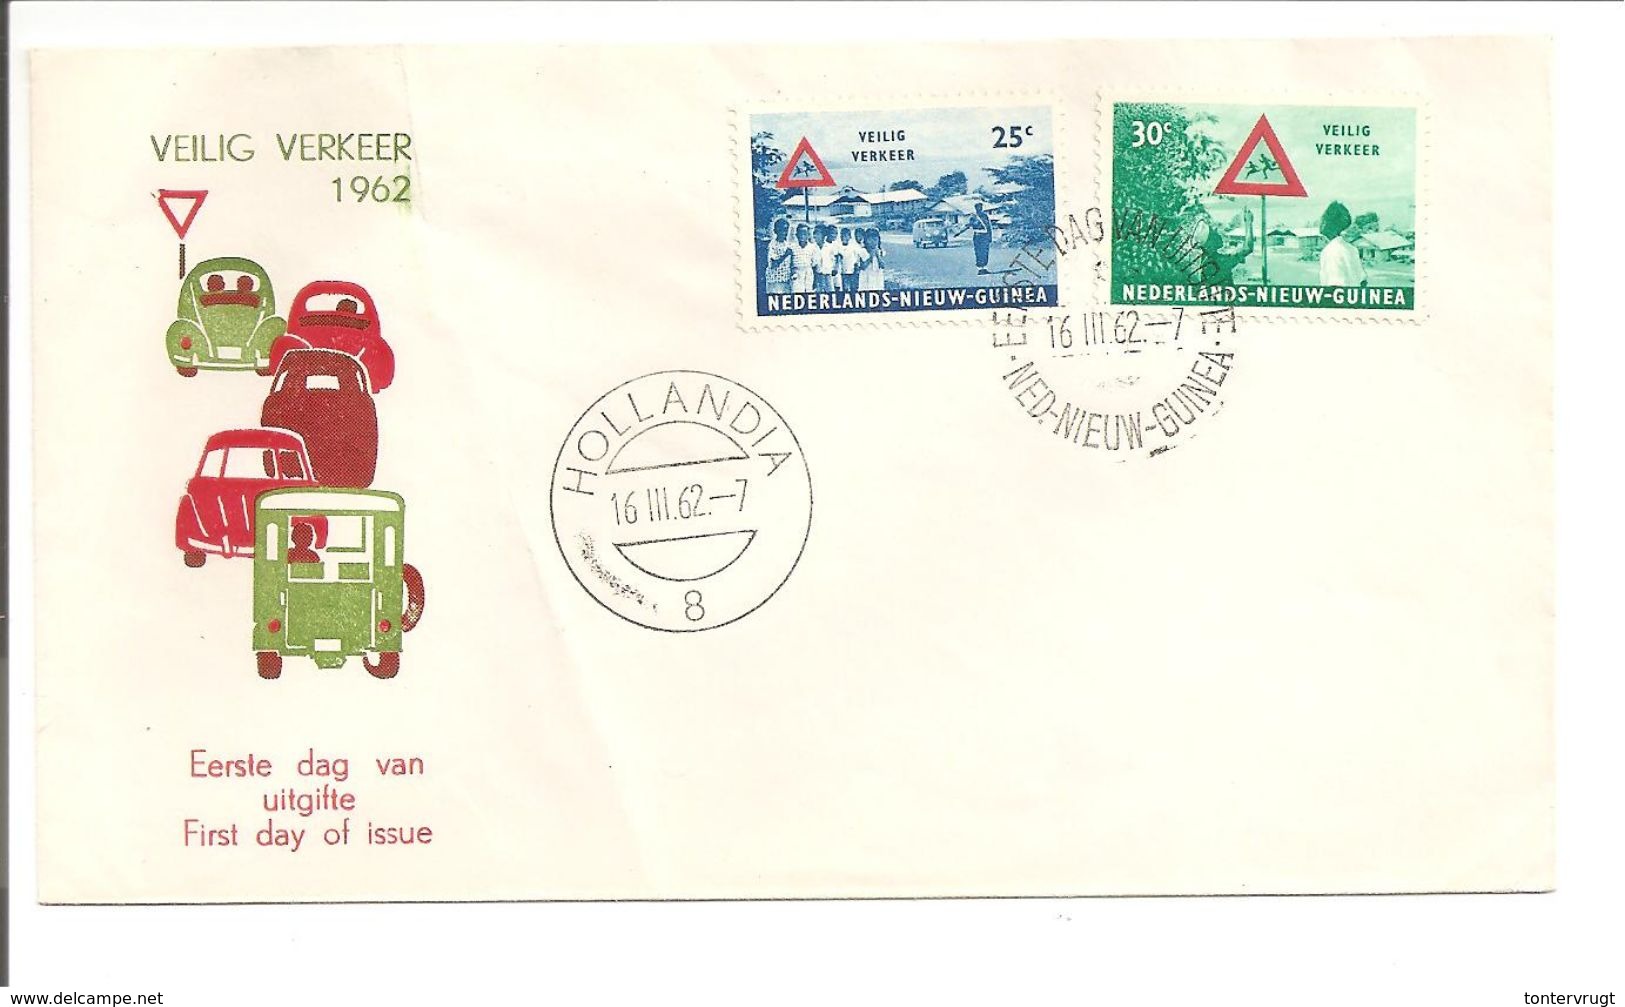 Veilig Verkeer 1962. F.D.C. Lichte Vouw - Netherlands New Guinea